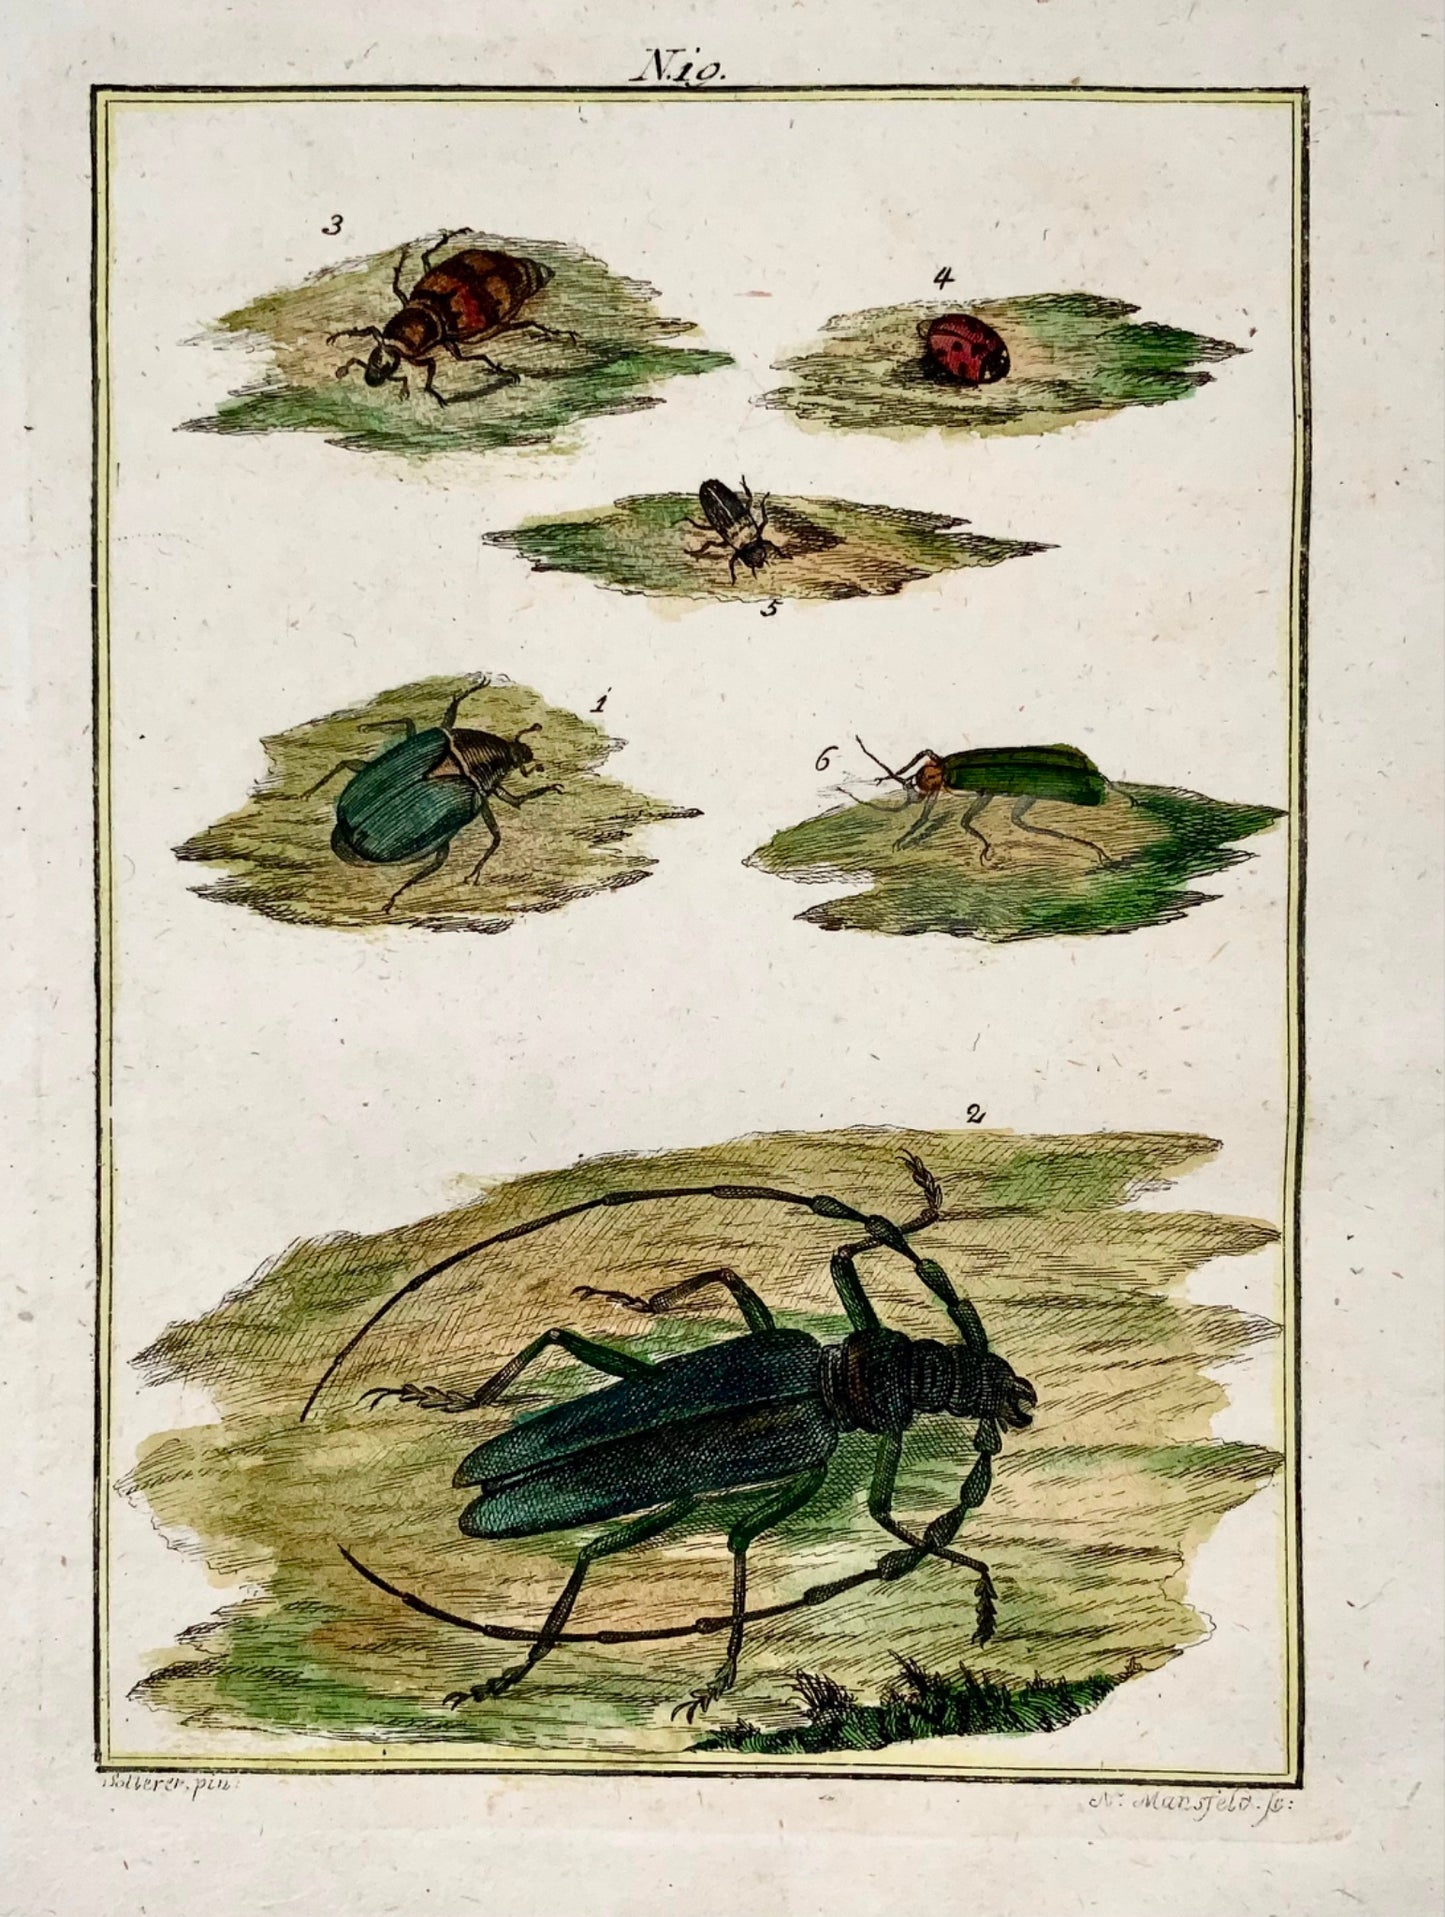 1790 Coléoptères, insectes, Joh. Gravure colorée à la main de Sollerer